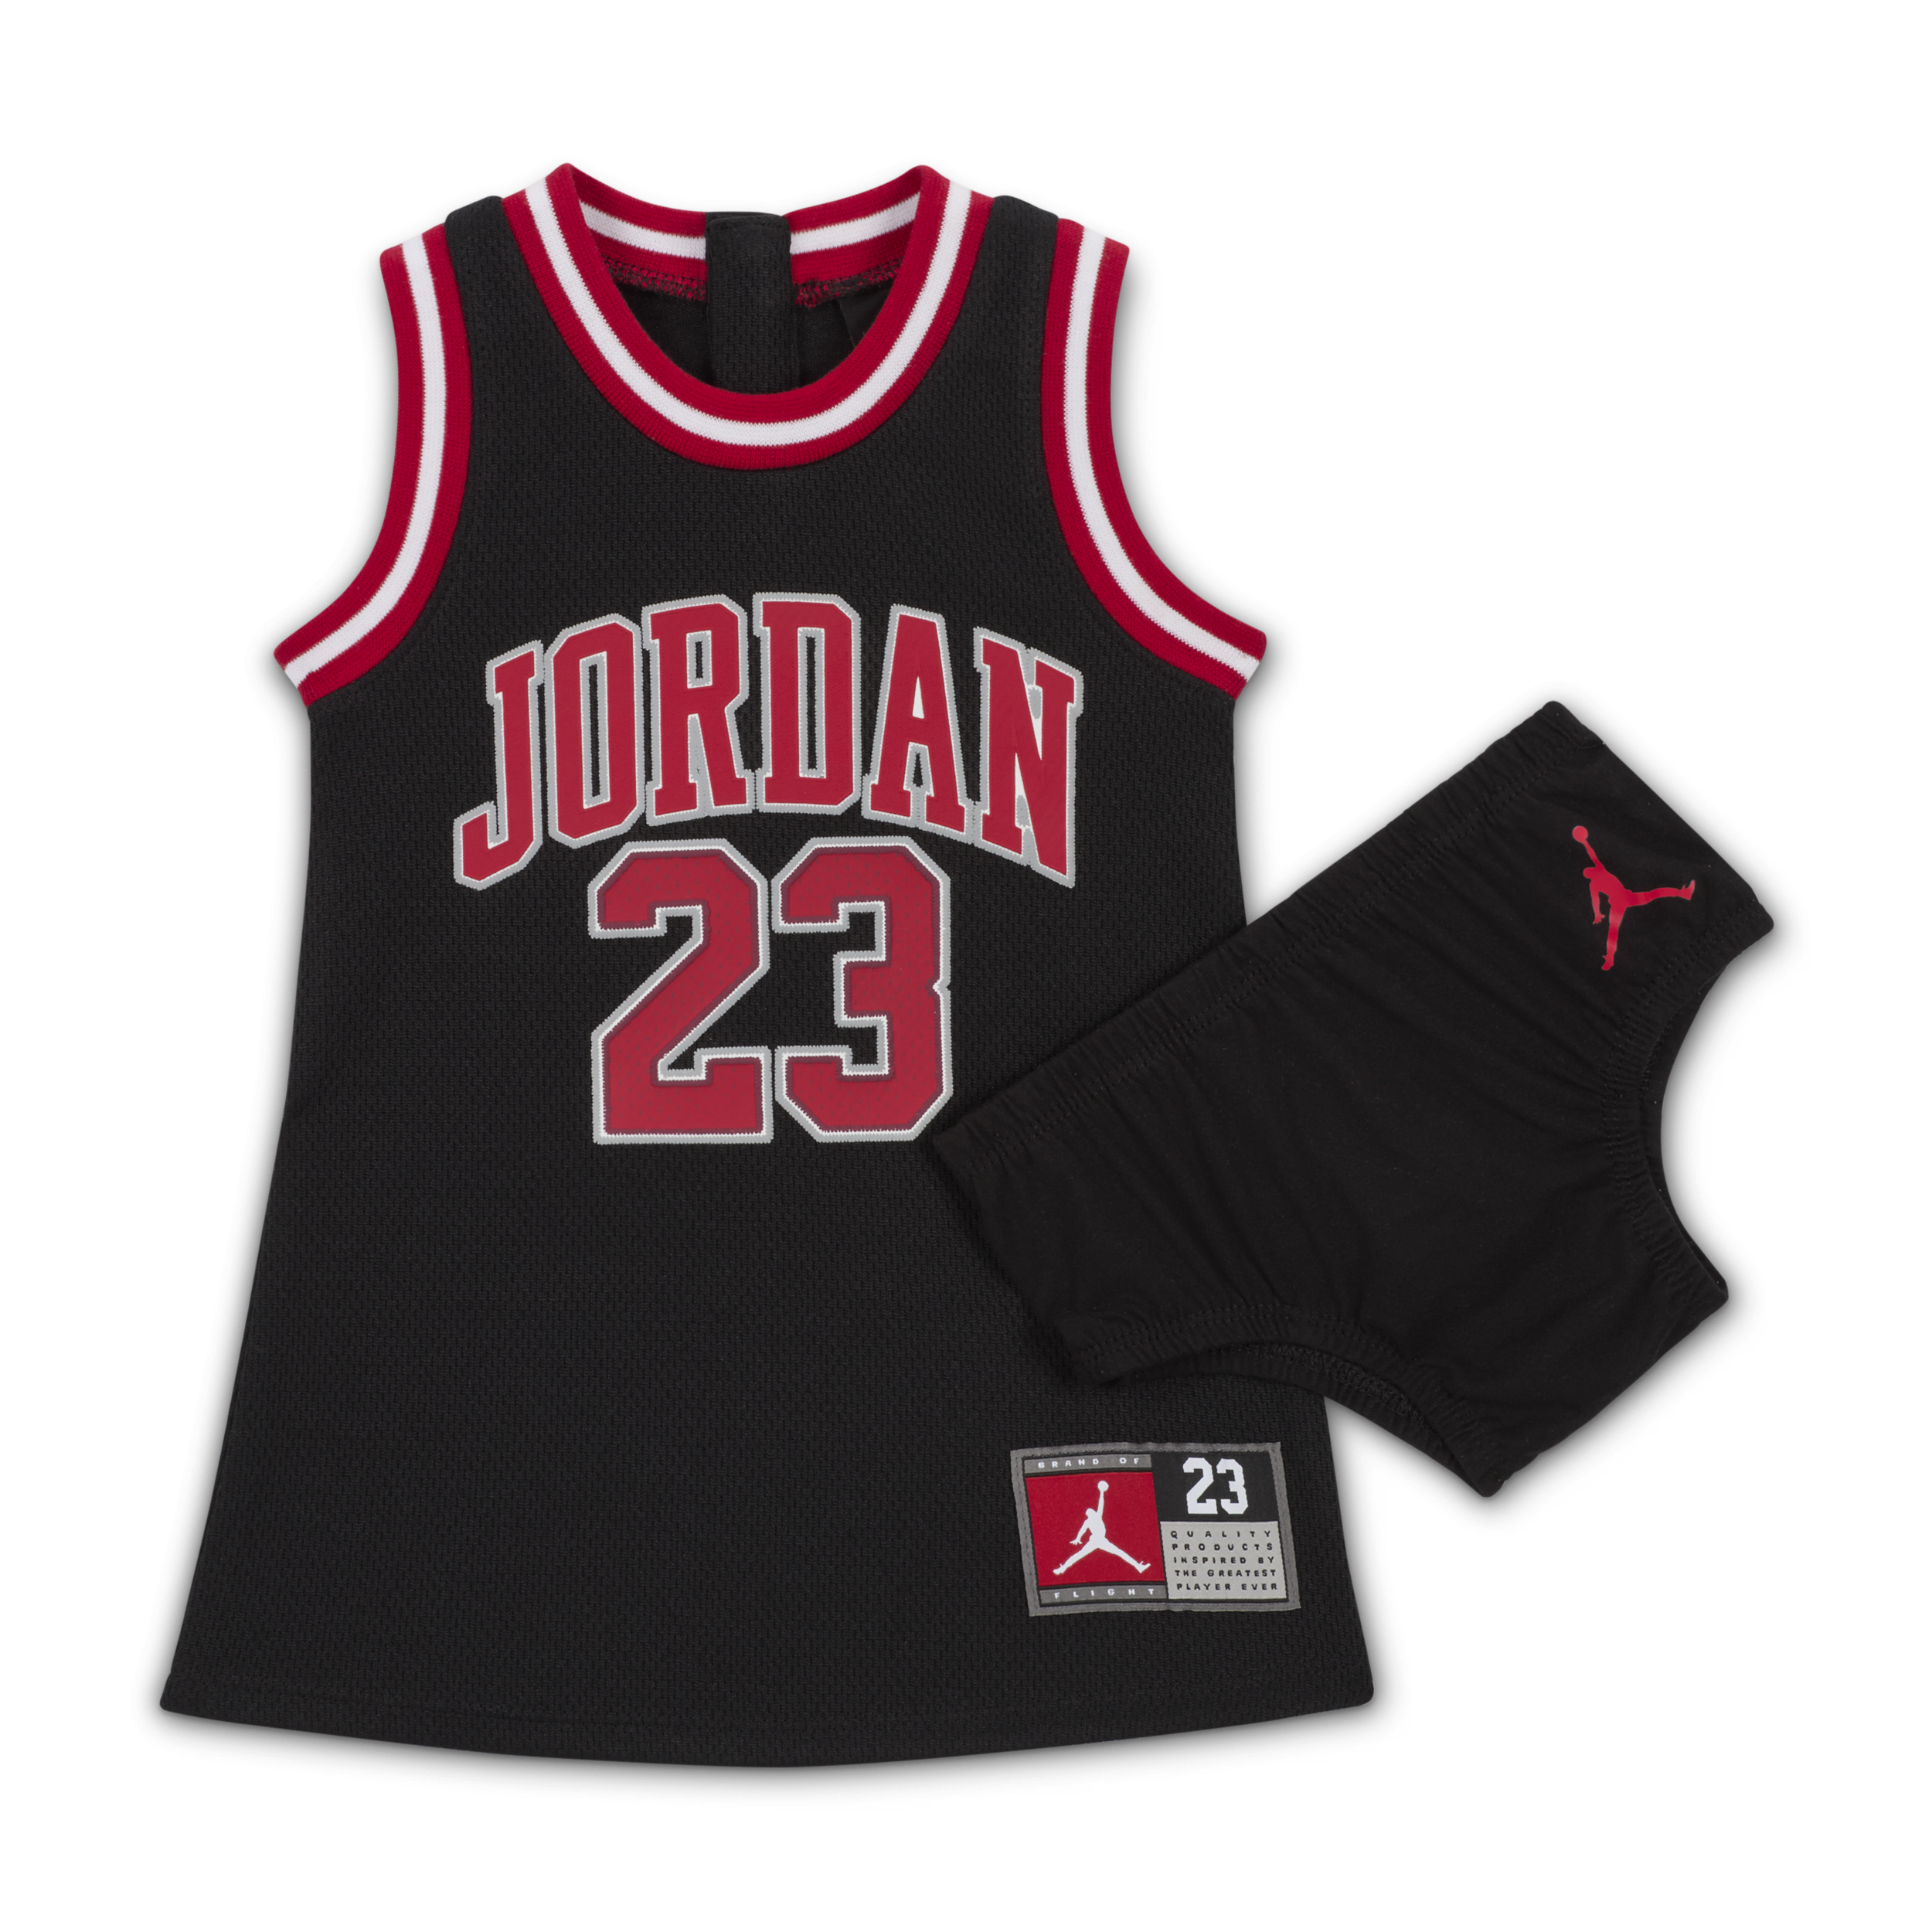 Jordan 23 Jersey jurkje voor baby's (12-24 maanden) - Zwart